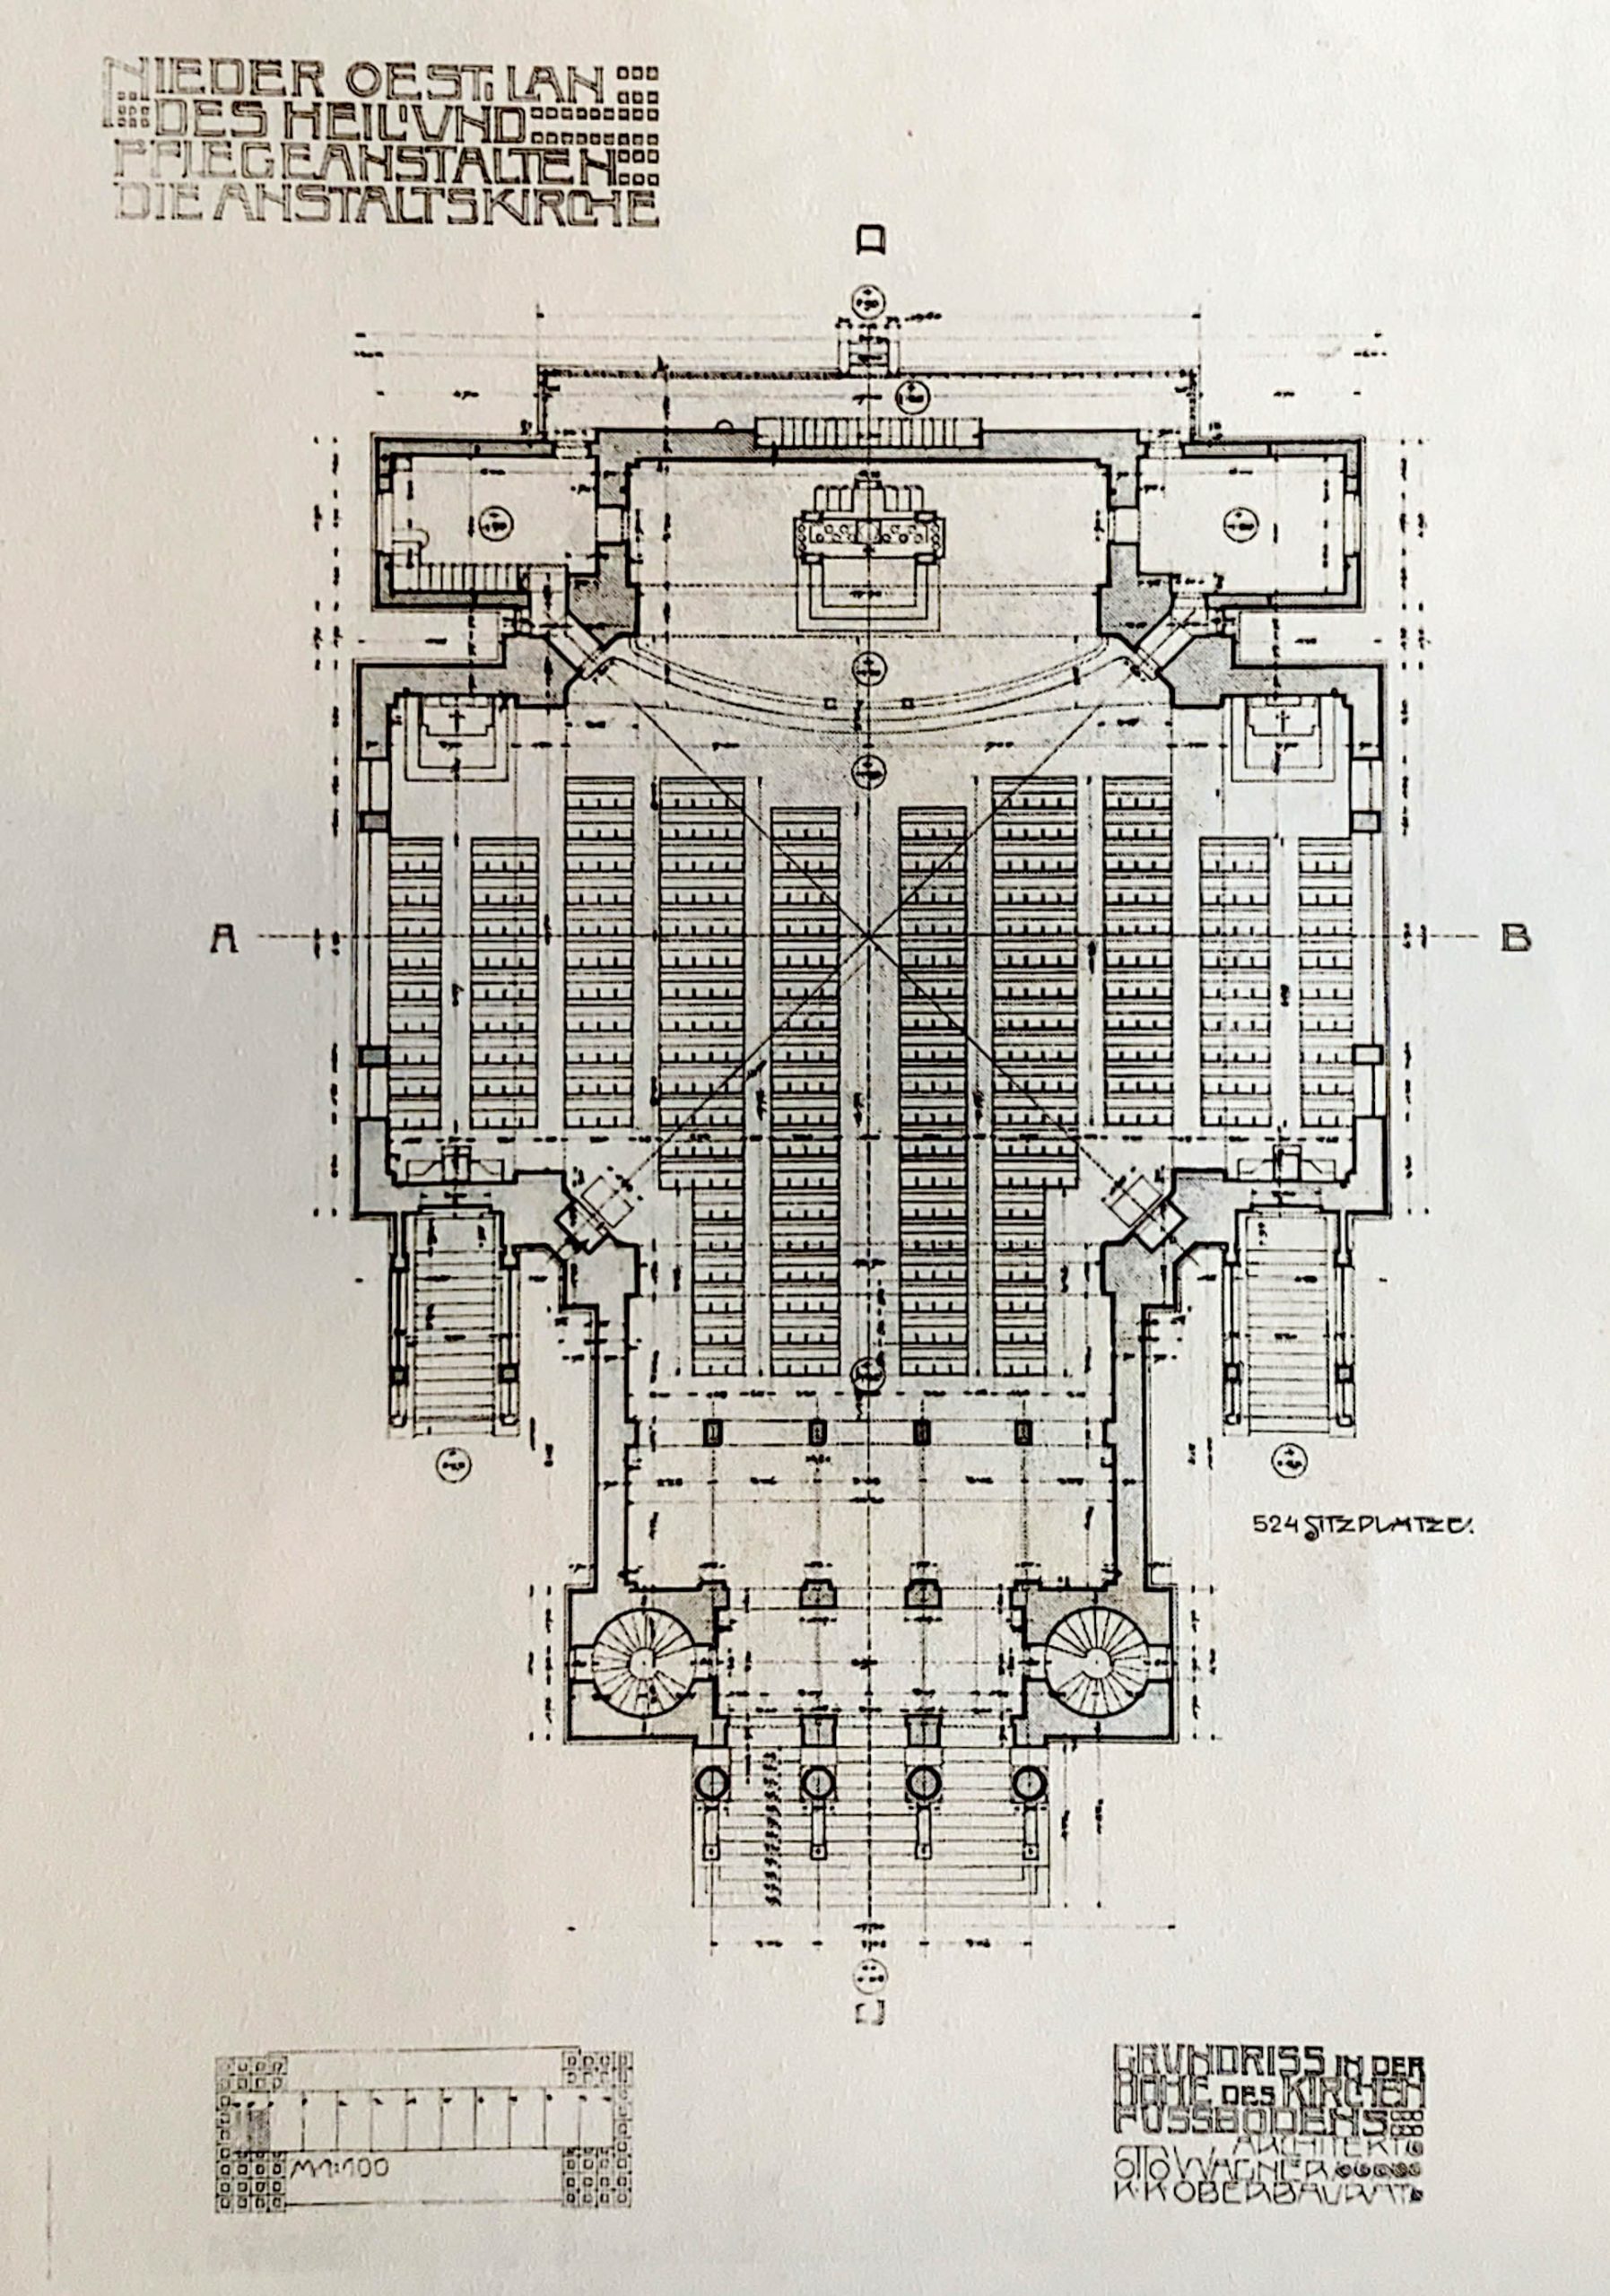 Kirche am Steinhof, Floor plan, 1904-1907. Architect: Otto Wagner